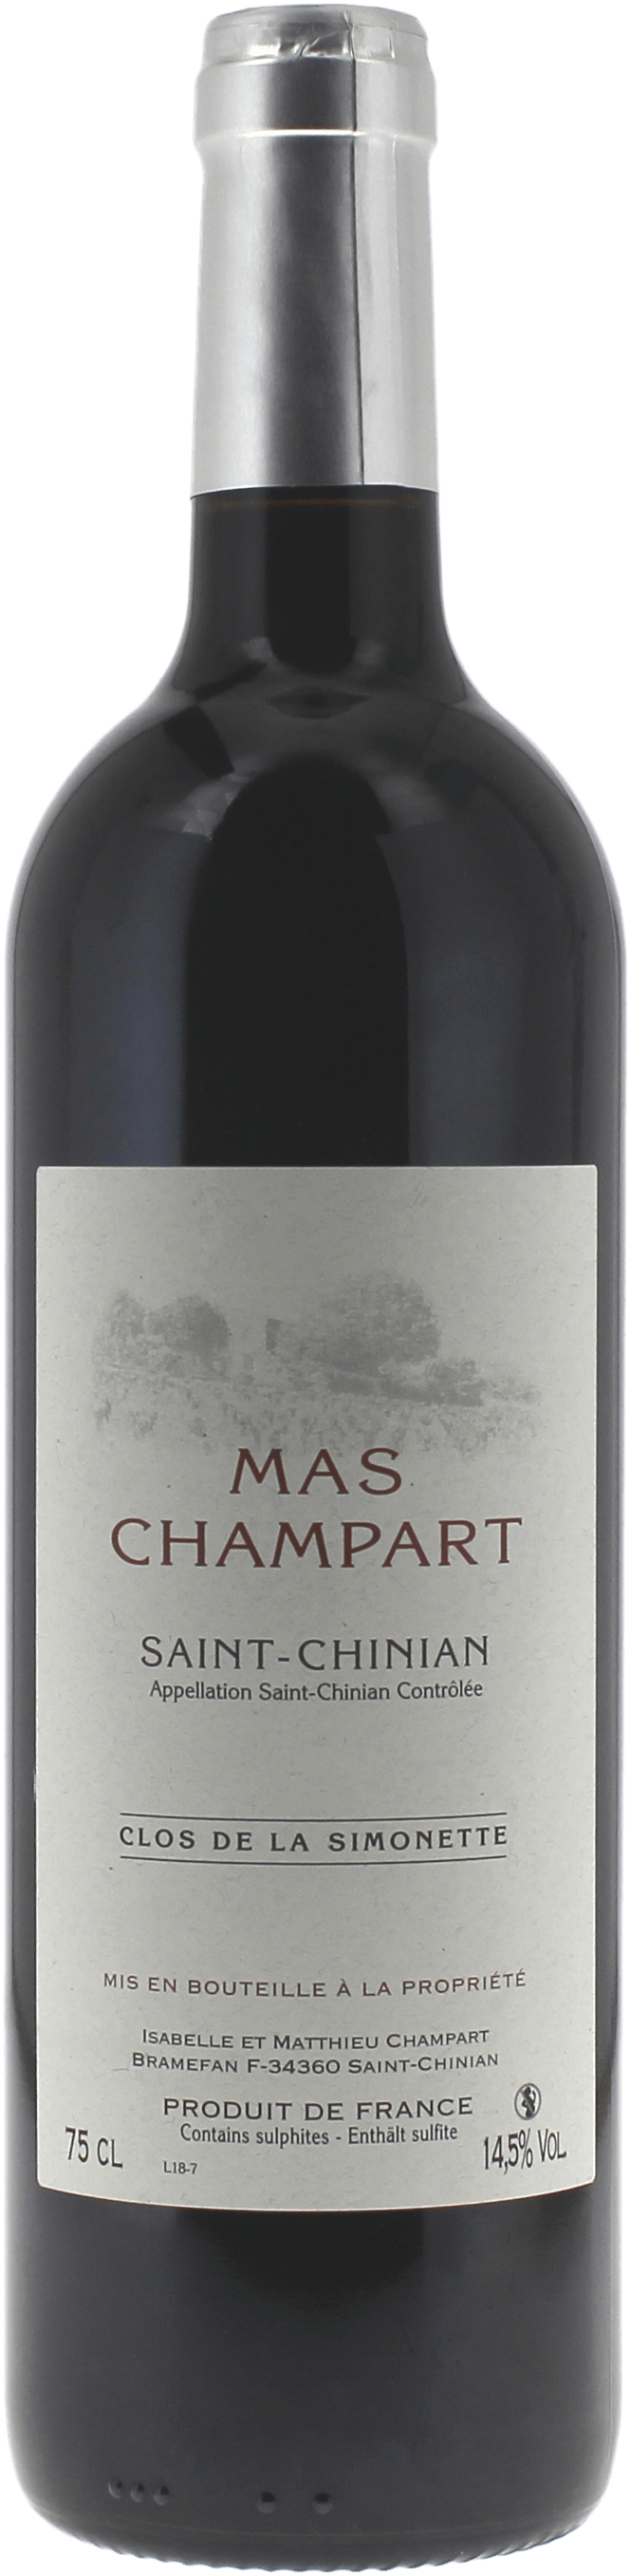 Mas champart clos de la simonette 2015  AOP, Languedoc rouge